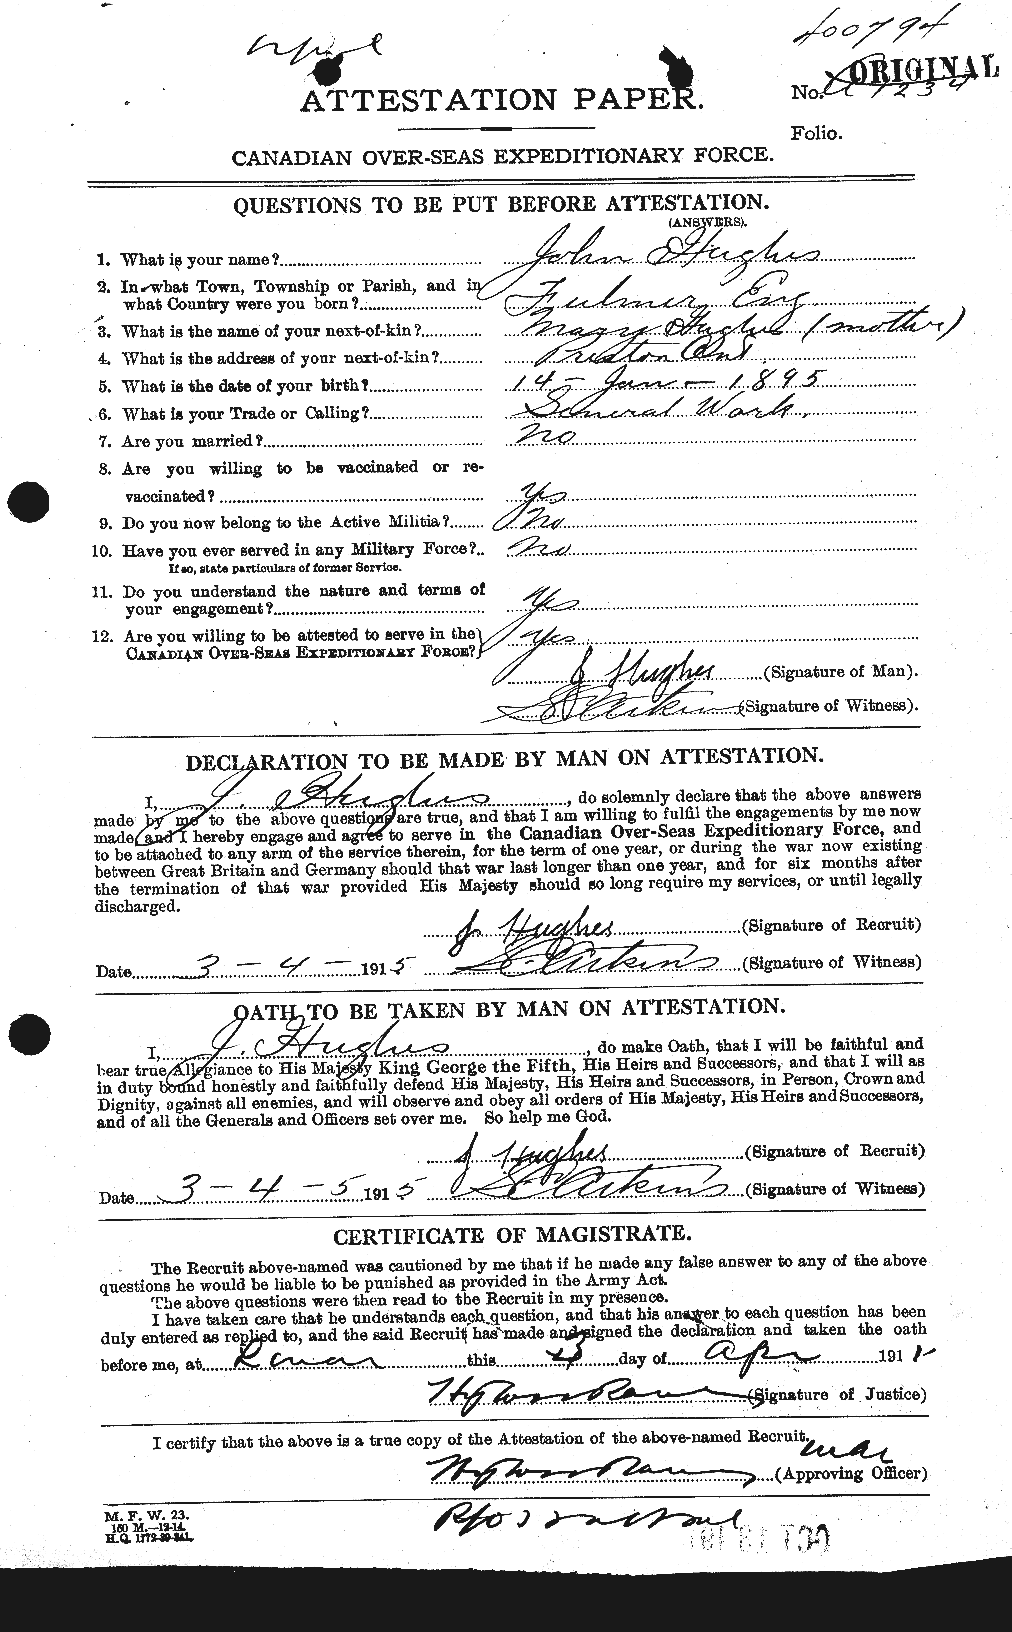 Dossiers du Personnel de la Première Guerre mondiale - CEC 403991a